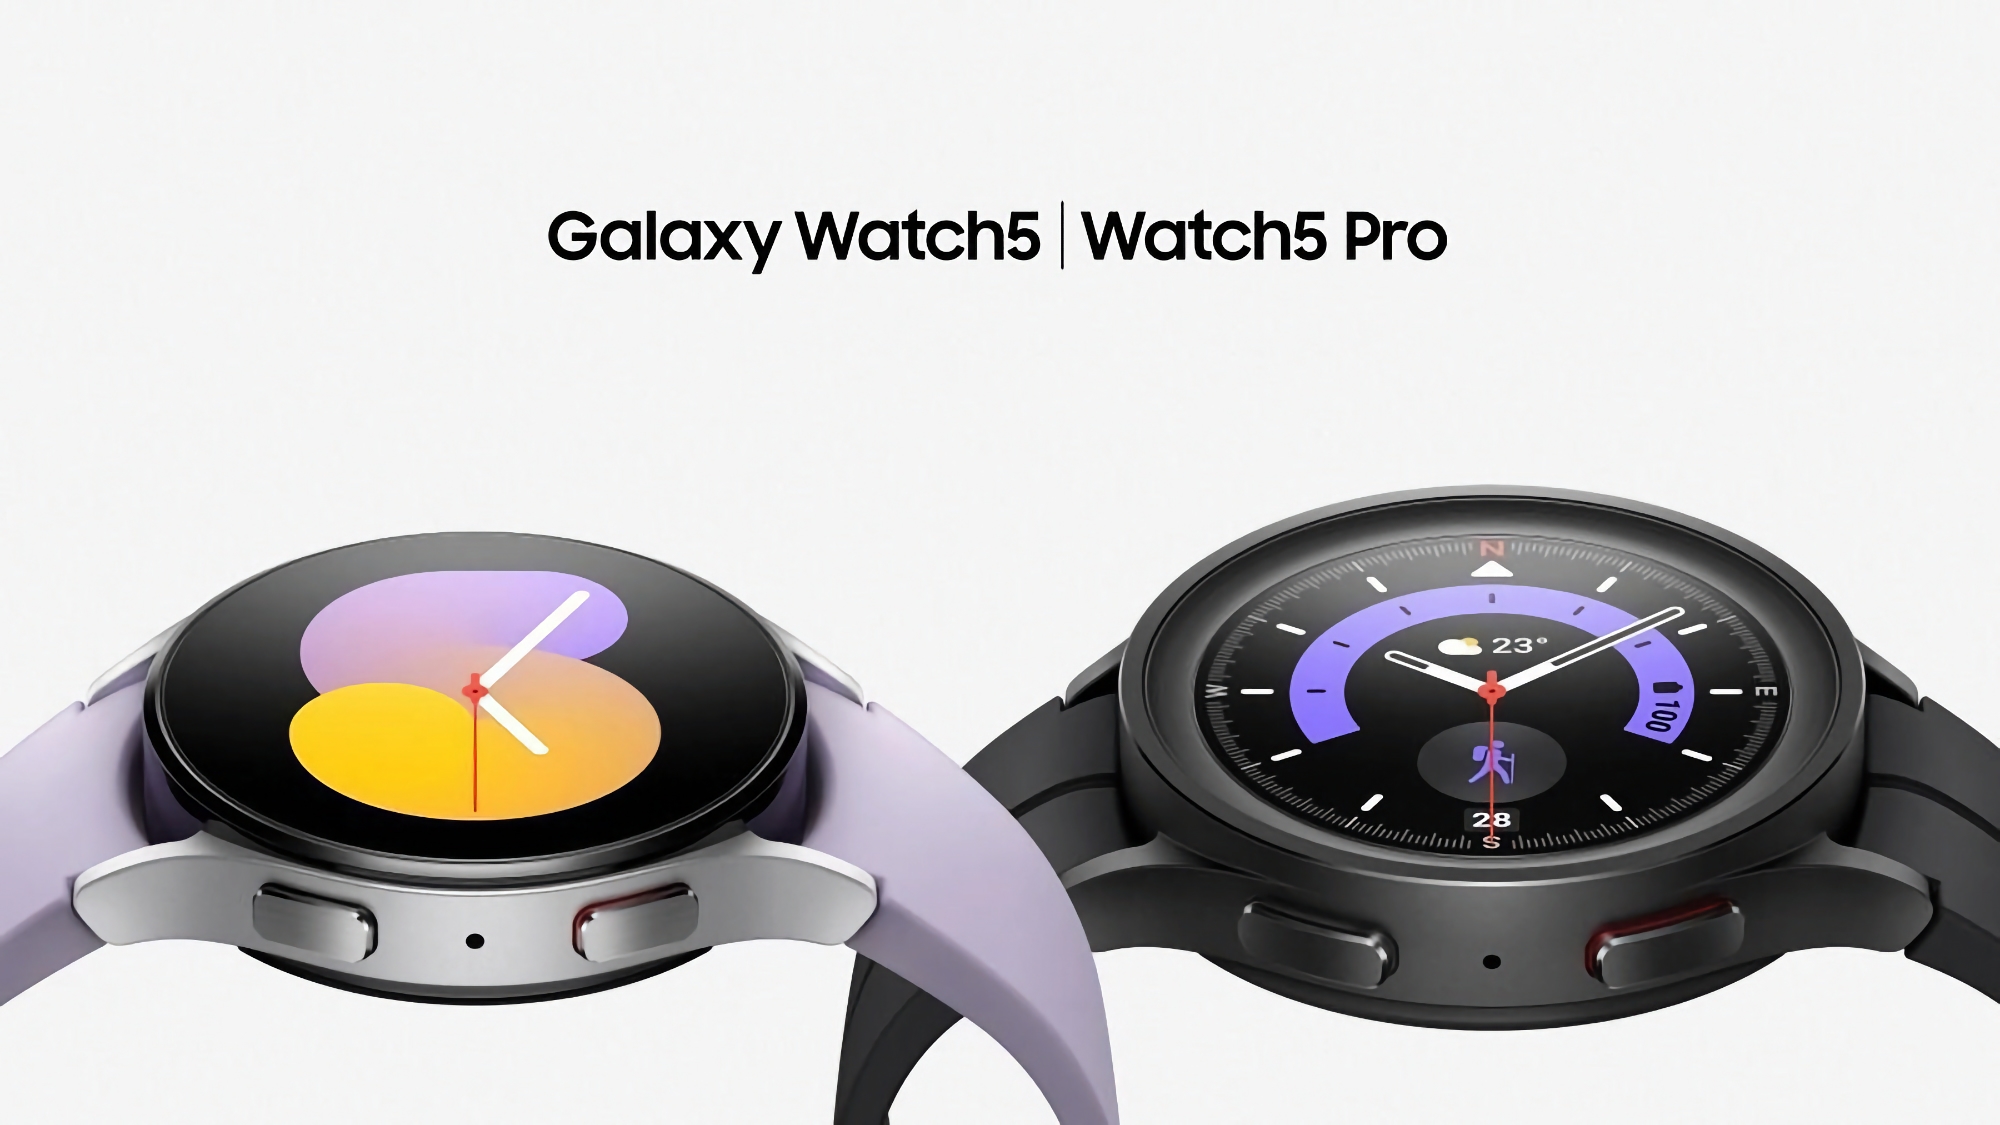 Samsung har frigivet en ny systemopdatering til Galaxy Watch 5 og Galaxy Watch 5 Pro.